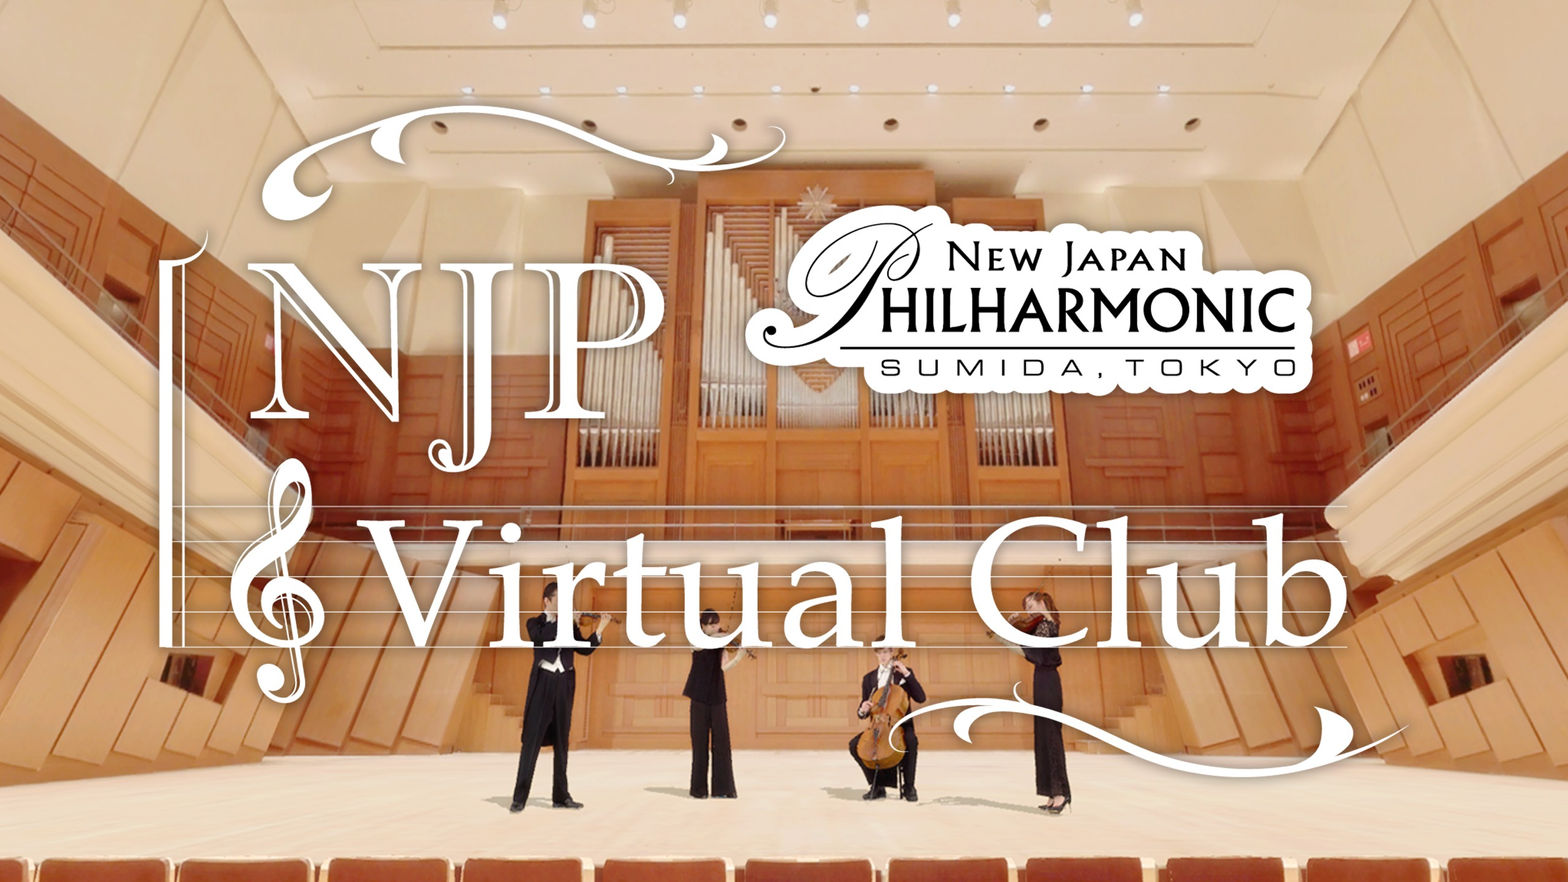 NJP Virtual Club